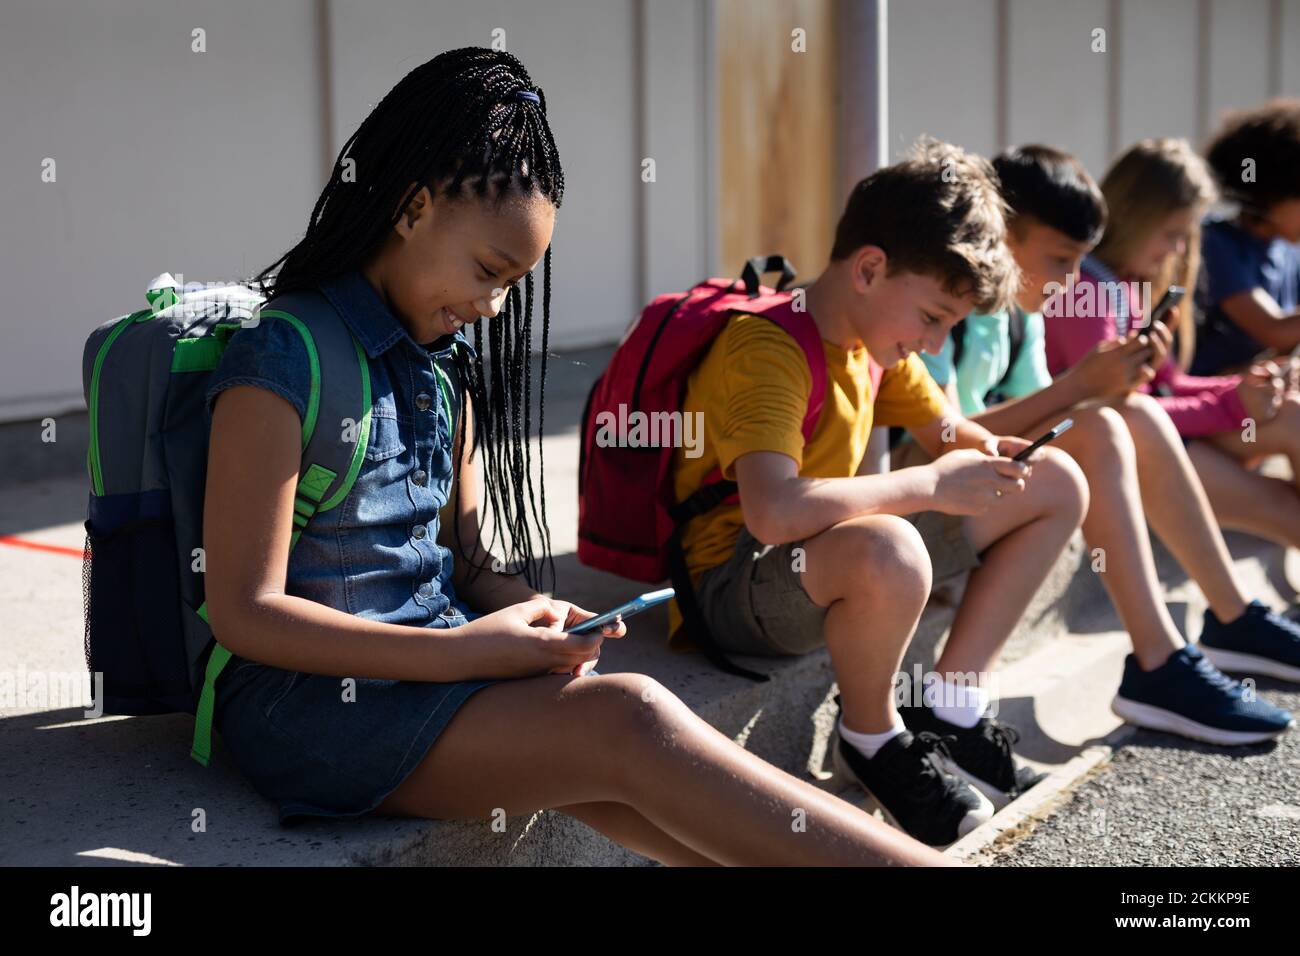 Gruppo di bambini che utilizzano gli smartphone mentre si siedono insieme Foto Stock